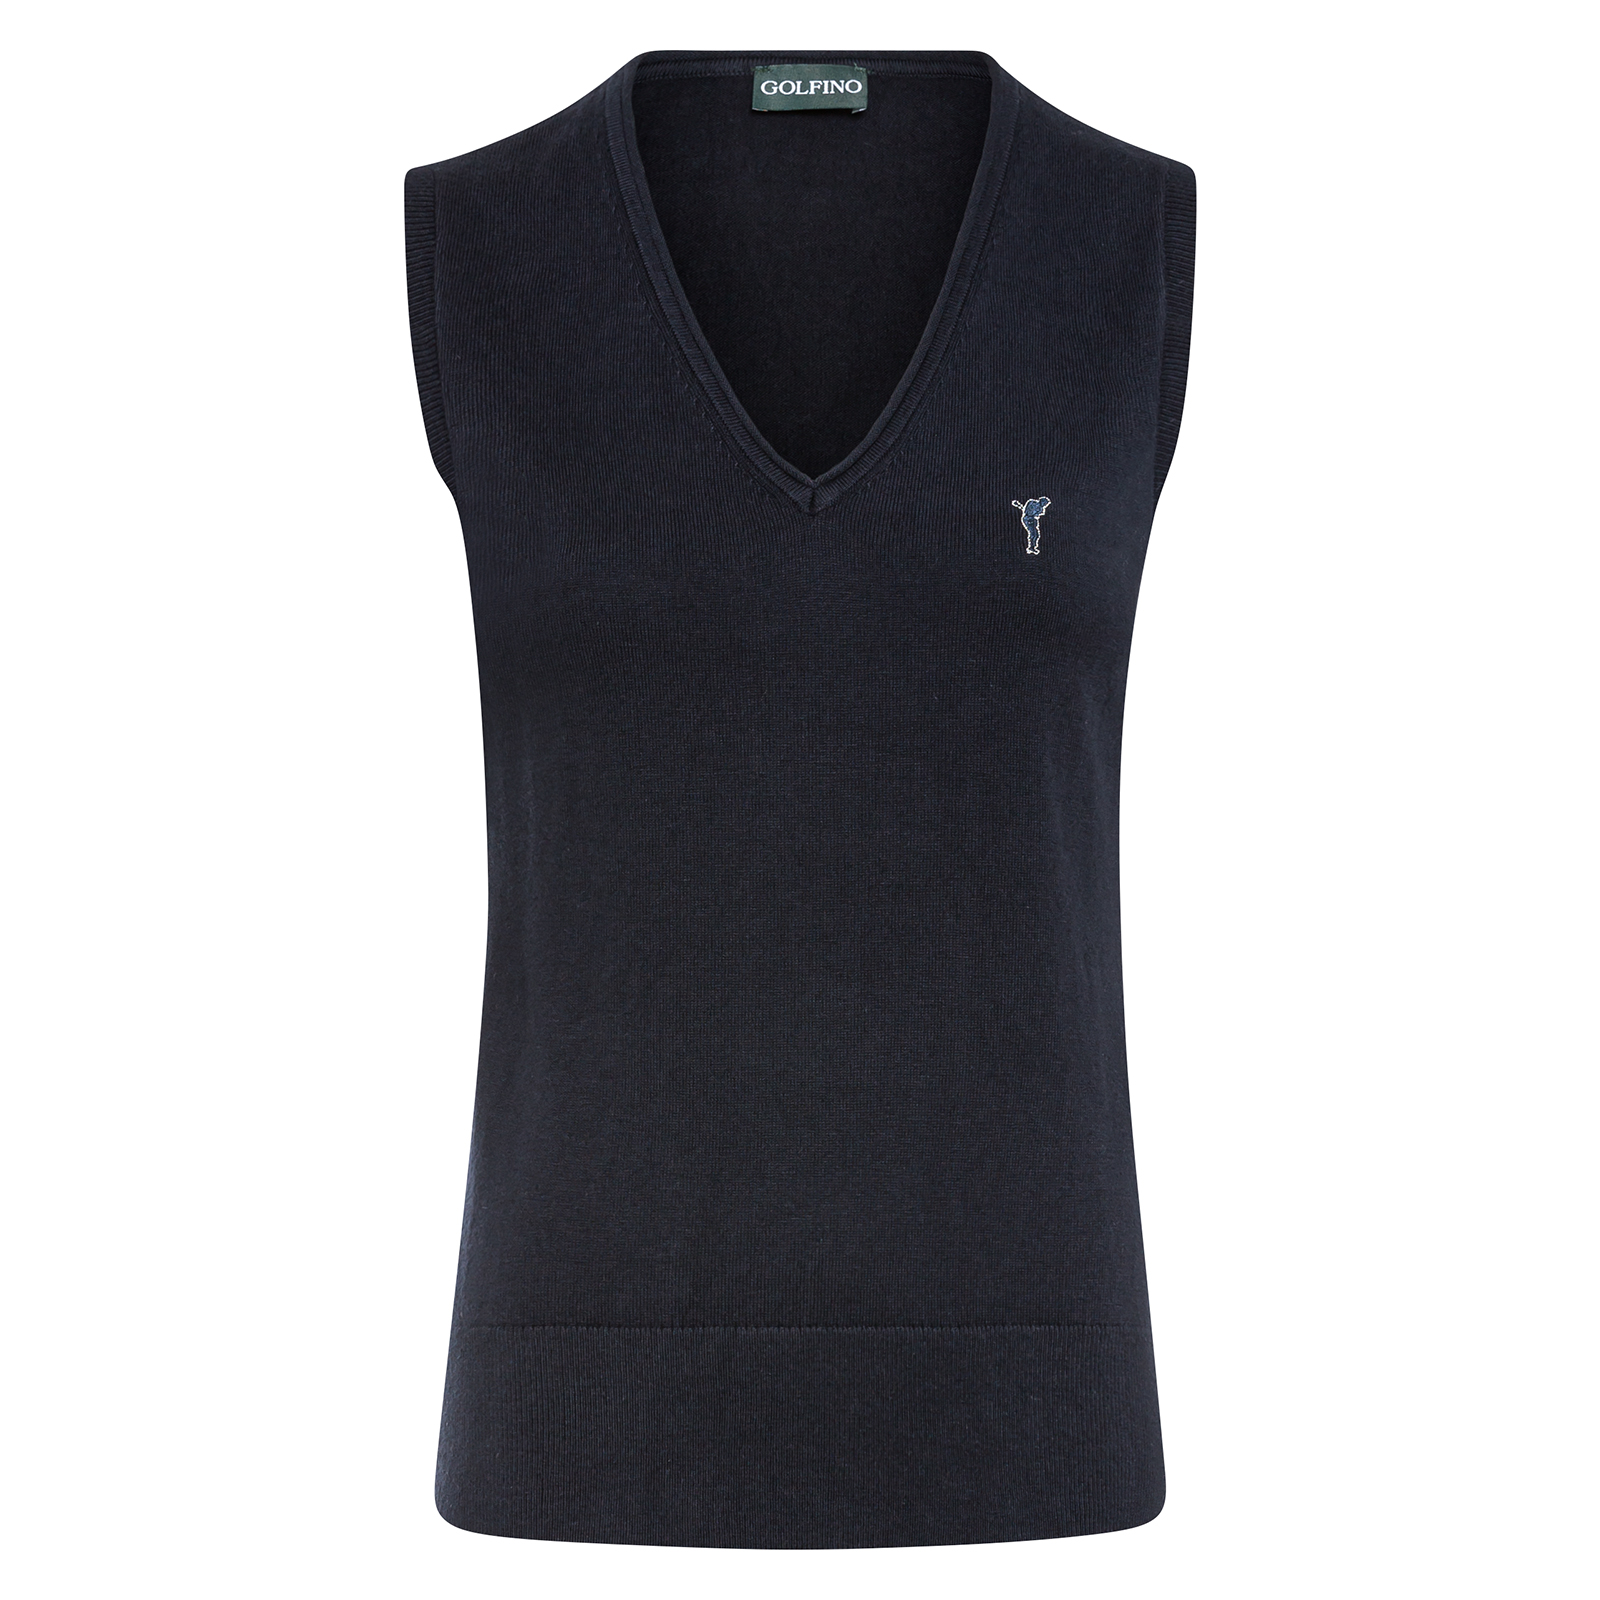 Ladies' sleeveless V-neck golf slipover with cashmere